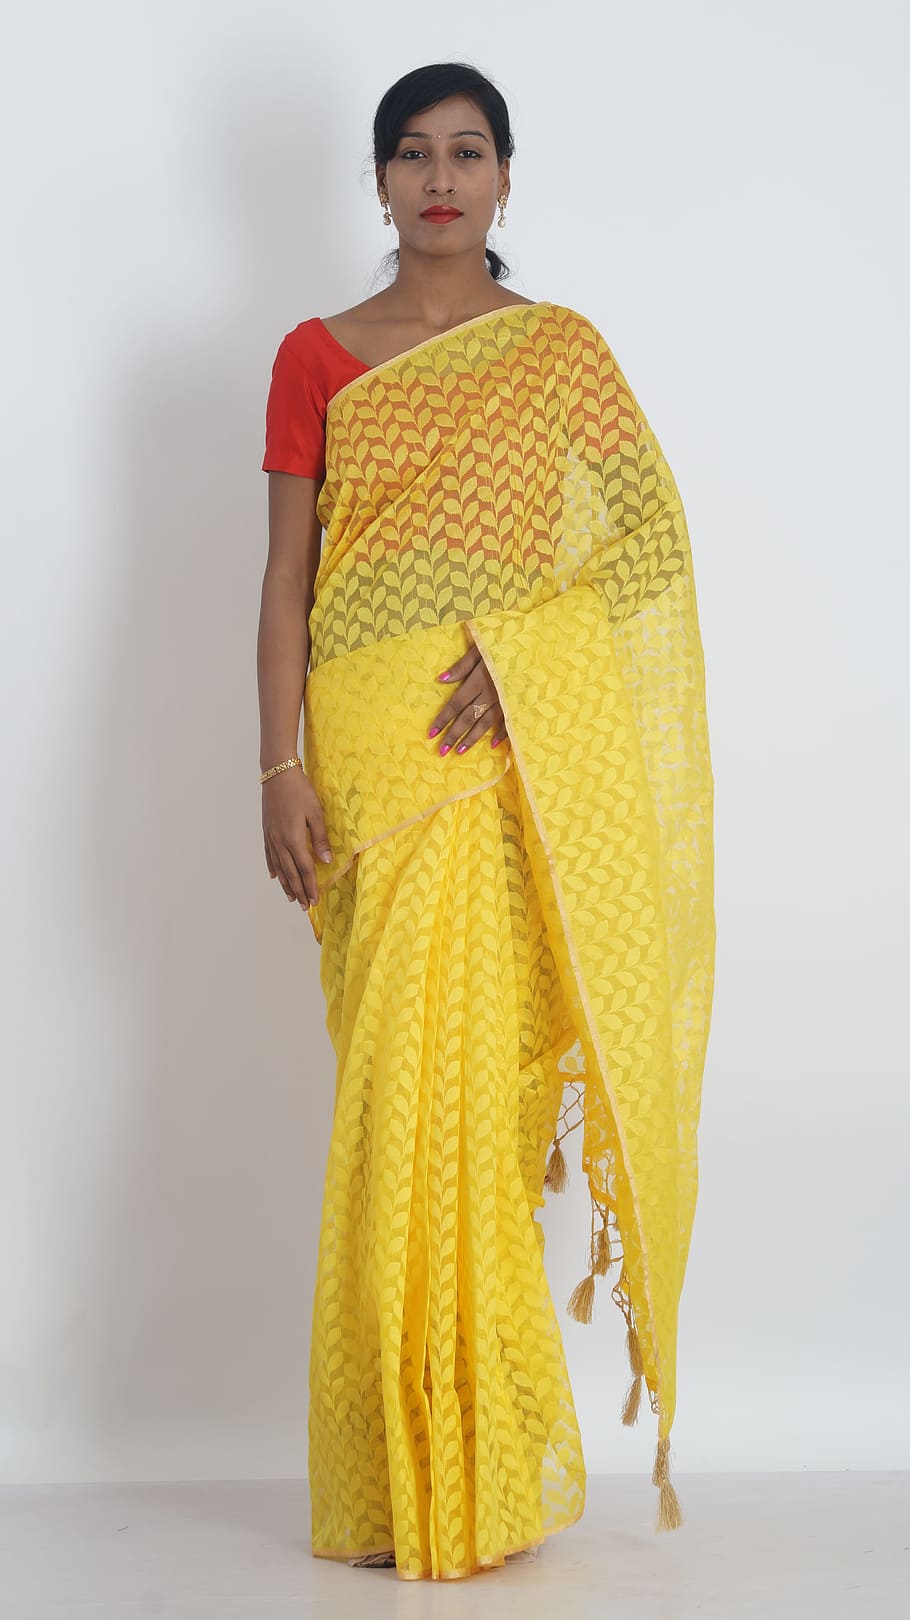 サリー, 黄色, レディース, 着る, 黄色サリー, 婦人服, インドの服, 伝統的, 立っている, 一人